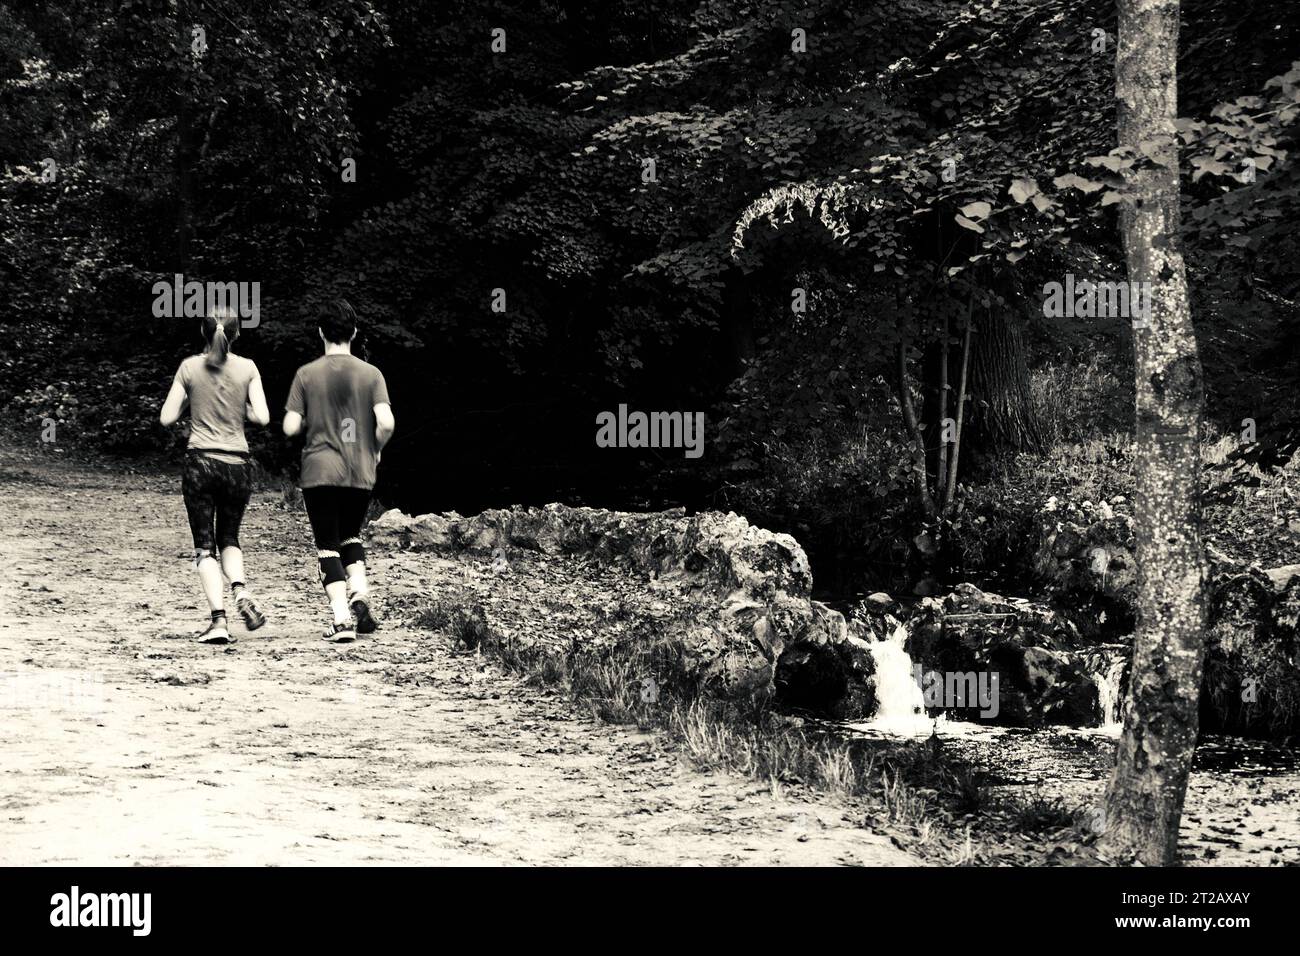 PARIS, FRANKREICH - 14. OKTOBER 2018: Junges Paar joggen in der Nähe des Baches im Wald von Vincennes von Paris, einem der größten Grünflächen der Stadt. Unscharfe Bewegung. Stockfoto